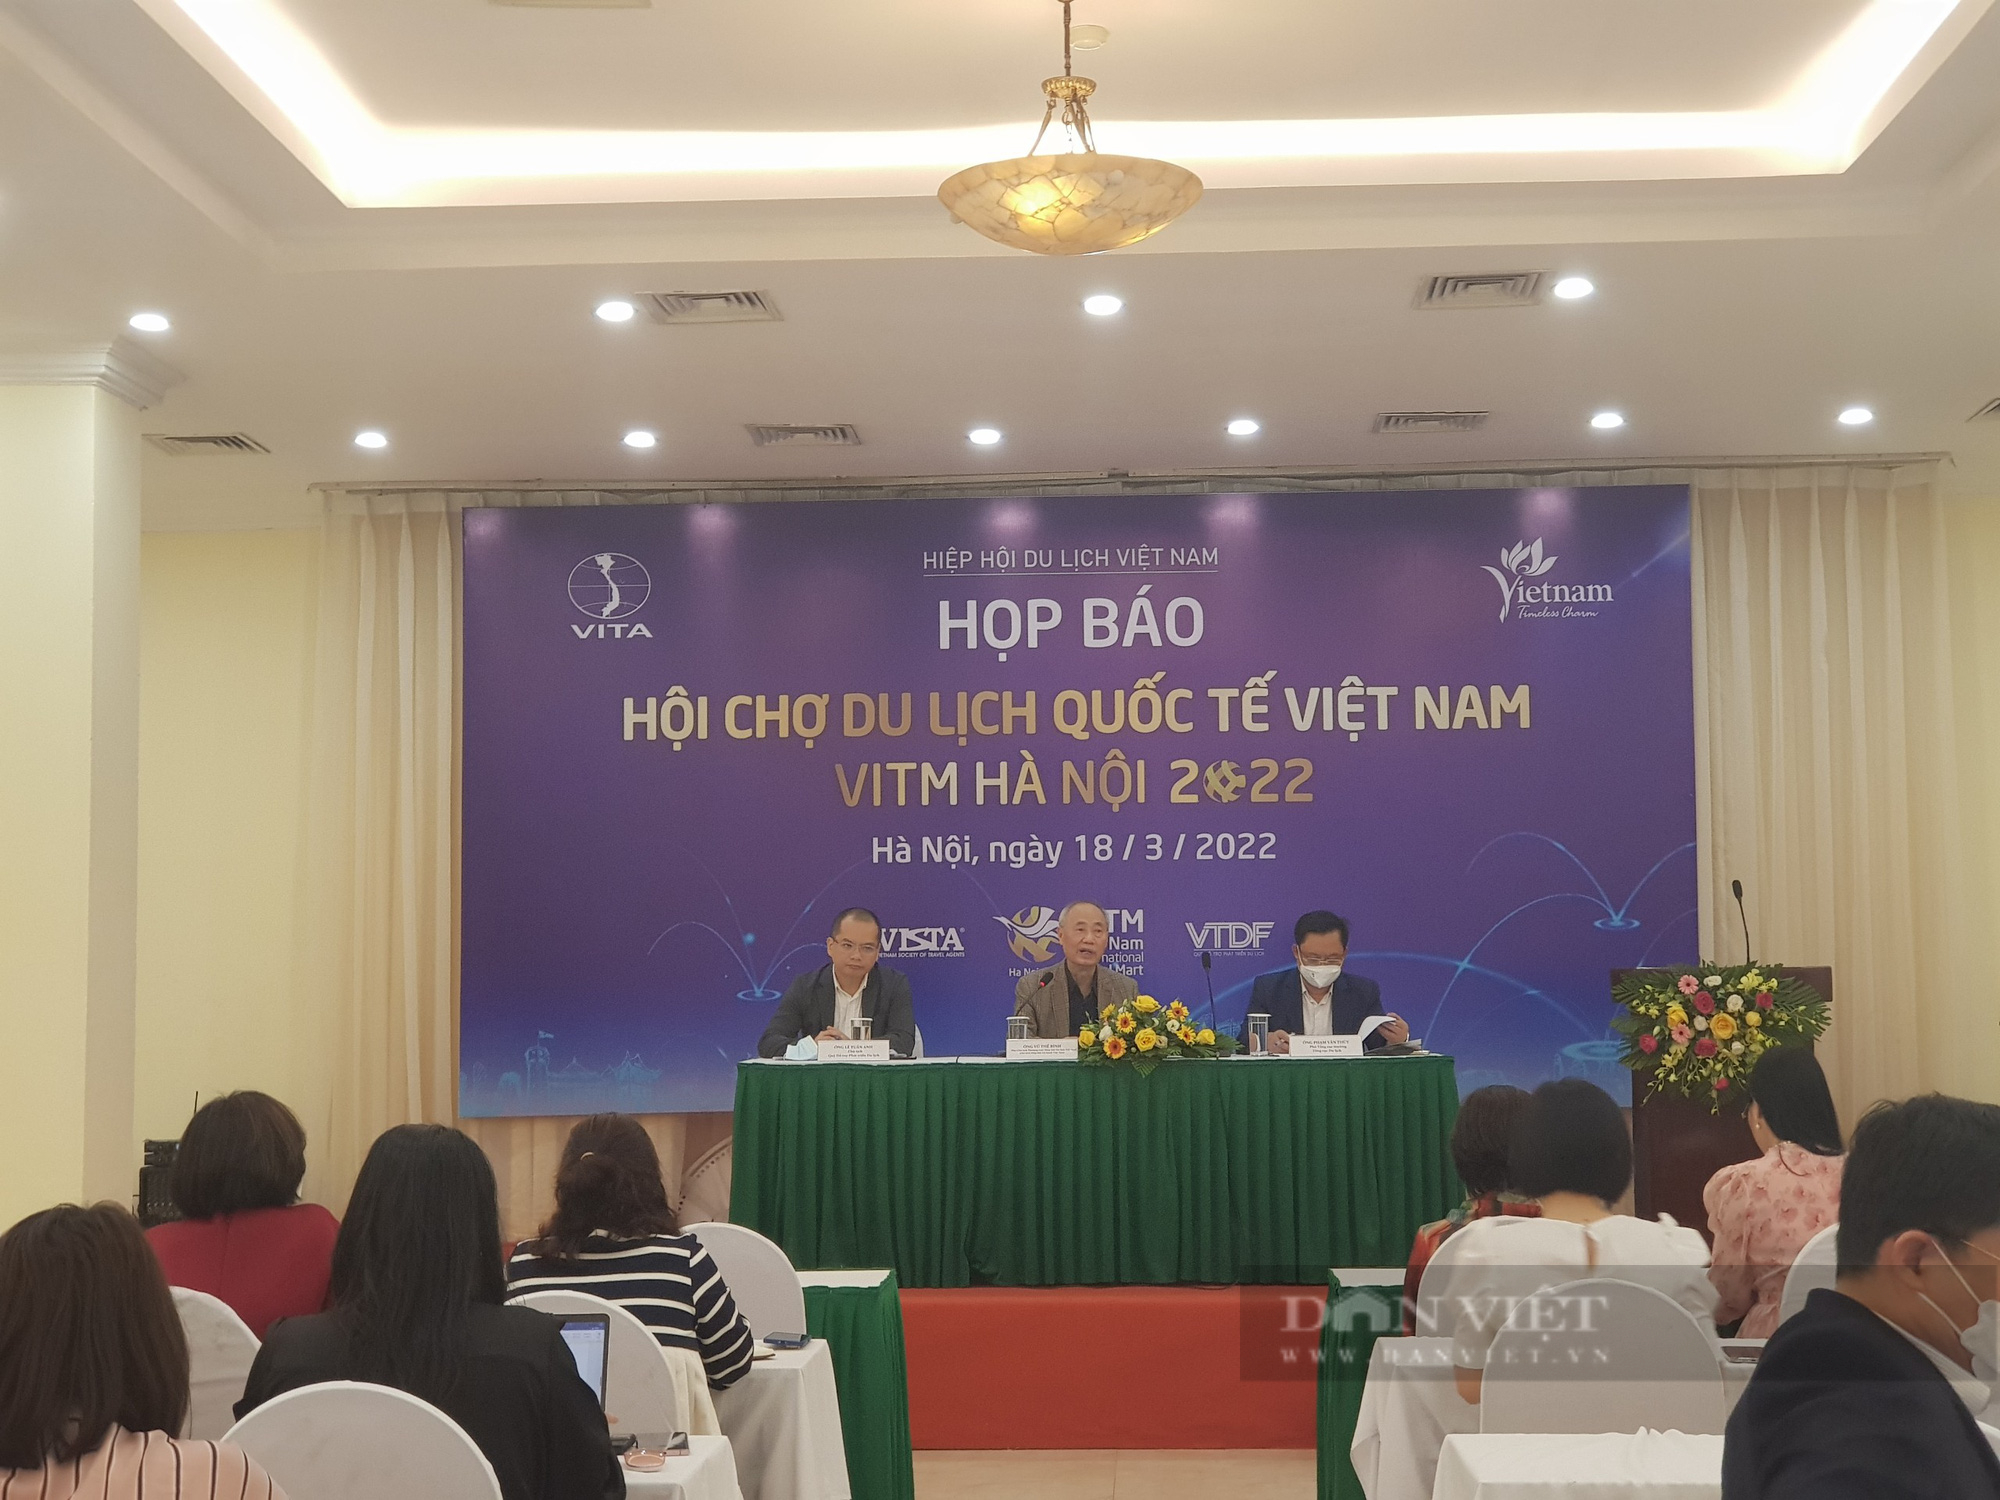 10.000 tour và 100.000 vé máy bay giá rẻ sẽ được mở bán tại Hội chợ Du lịch quốc tế Việt Nam 2022  - Ảnh 1.